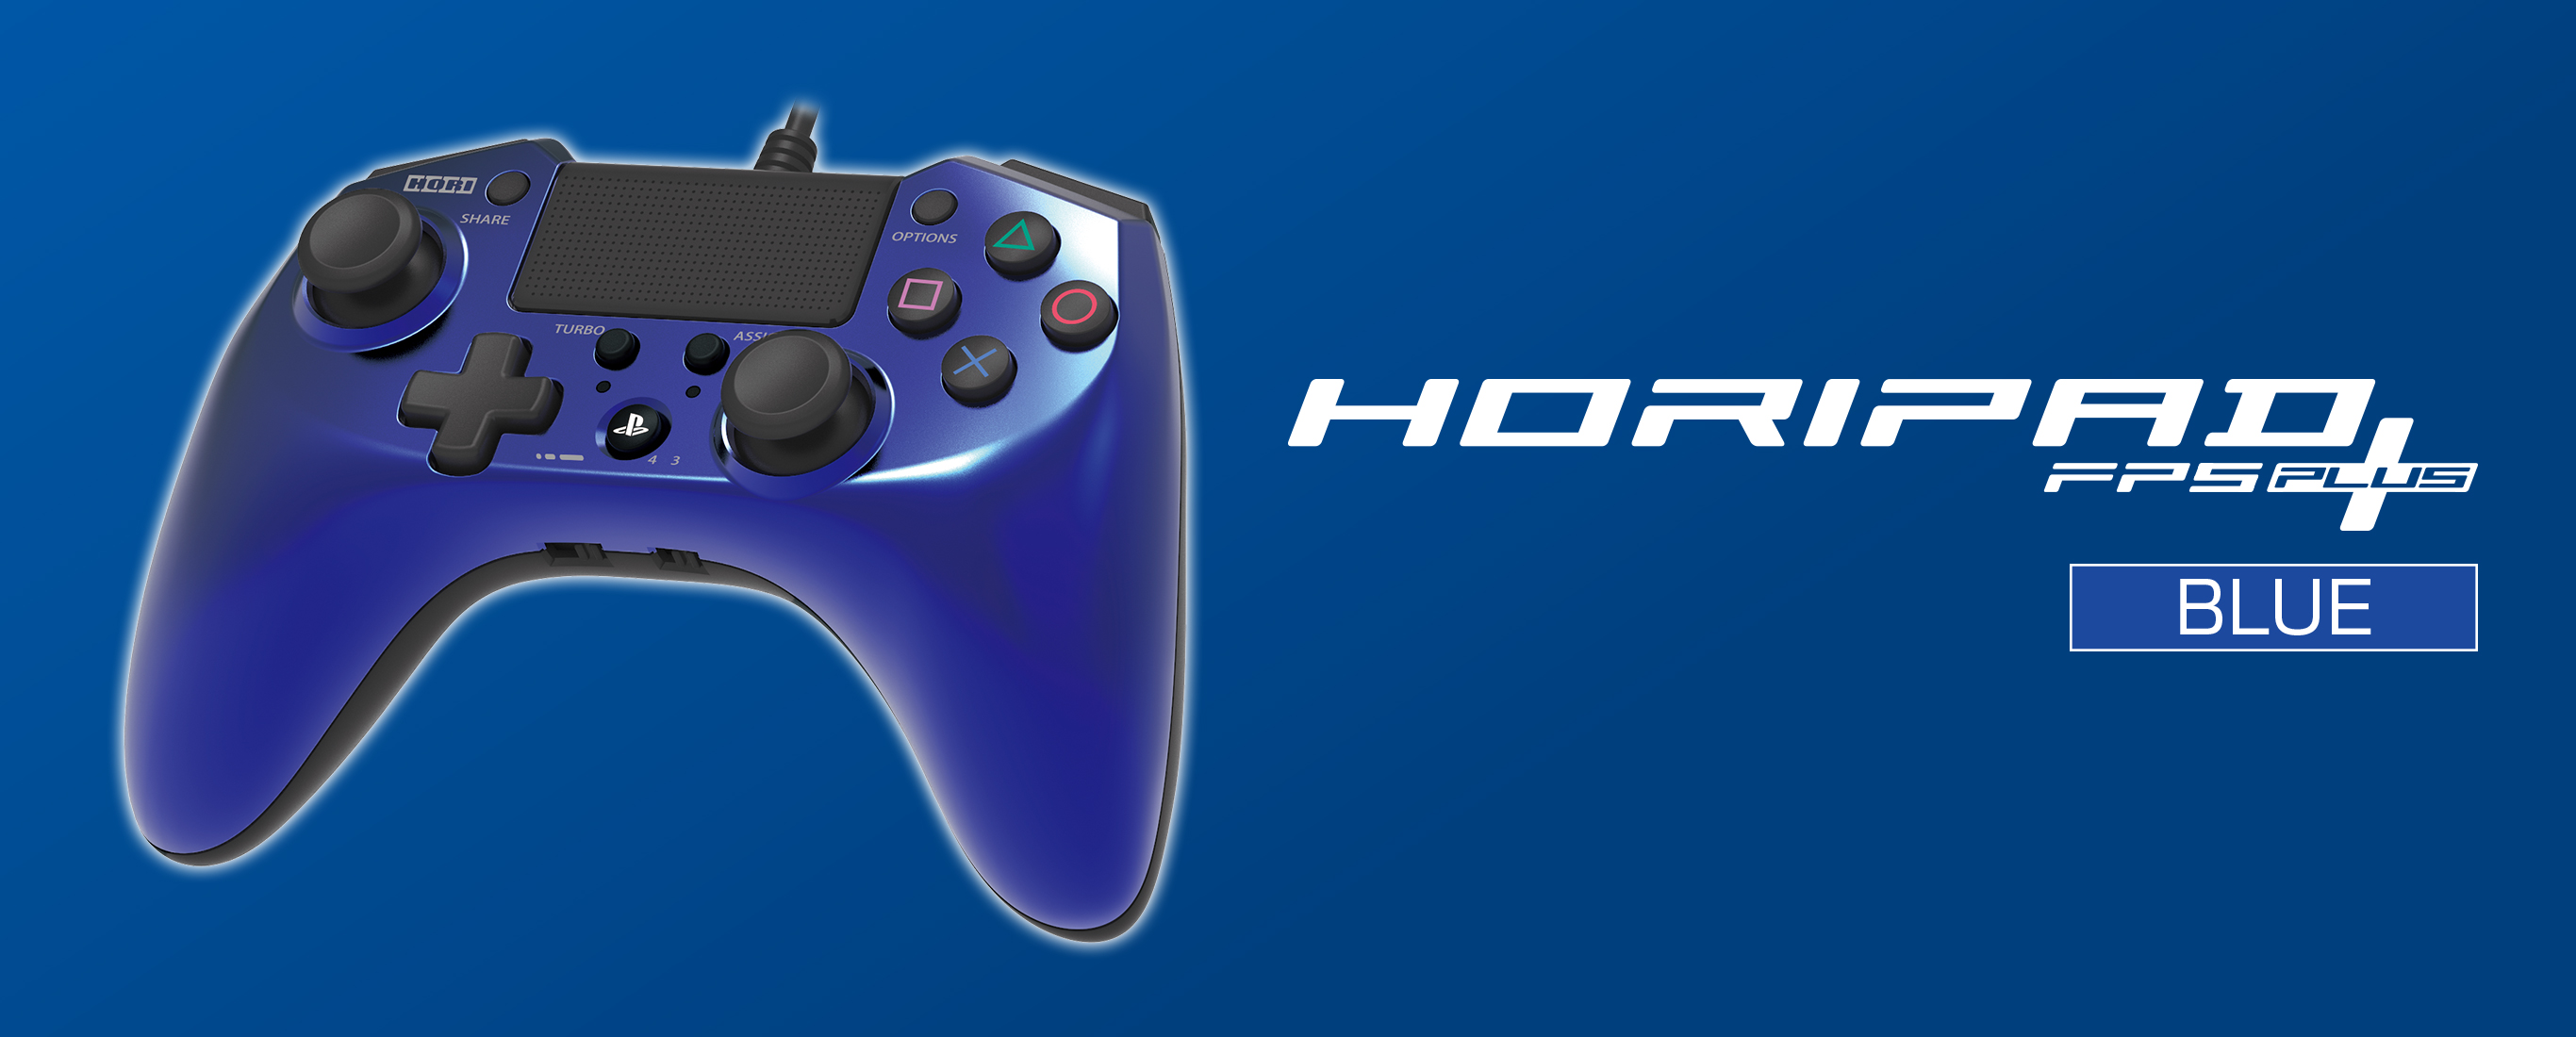 株式会社 Hori ホリパッドfpsプラス For Playstation 4 ブルー